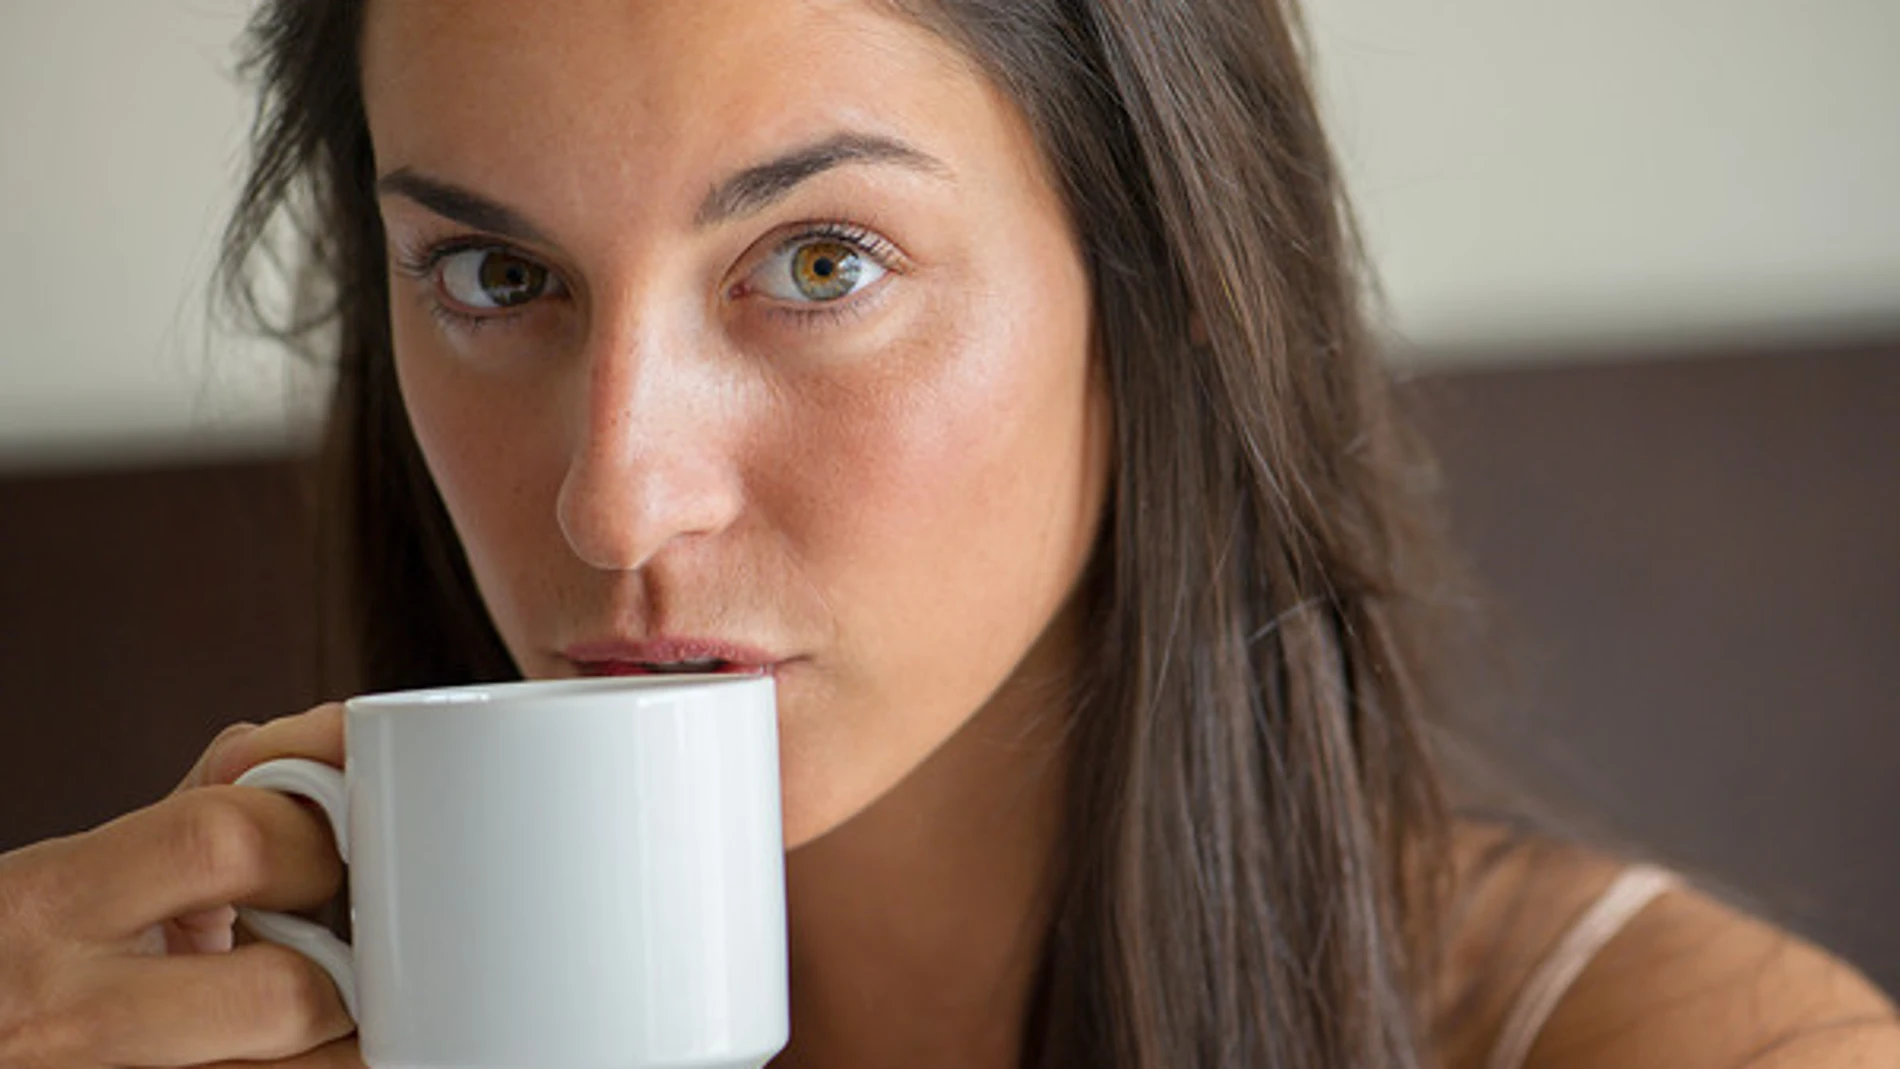 Tomar una taza de café antes de una siesta corta puede evitar la somnolencia.